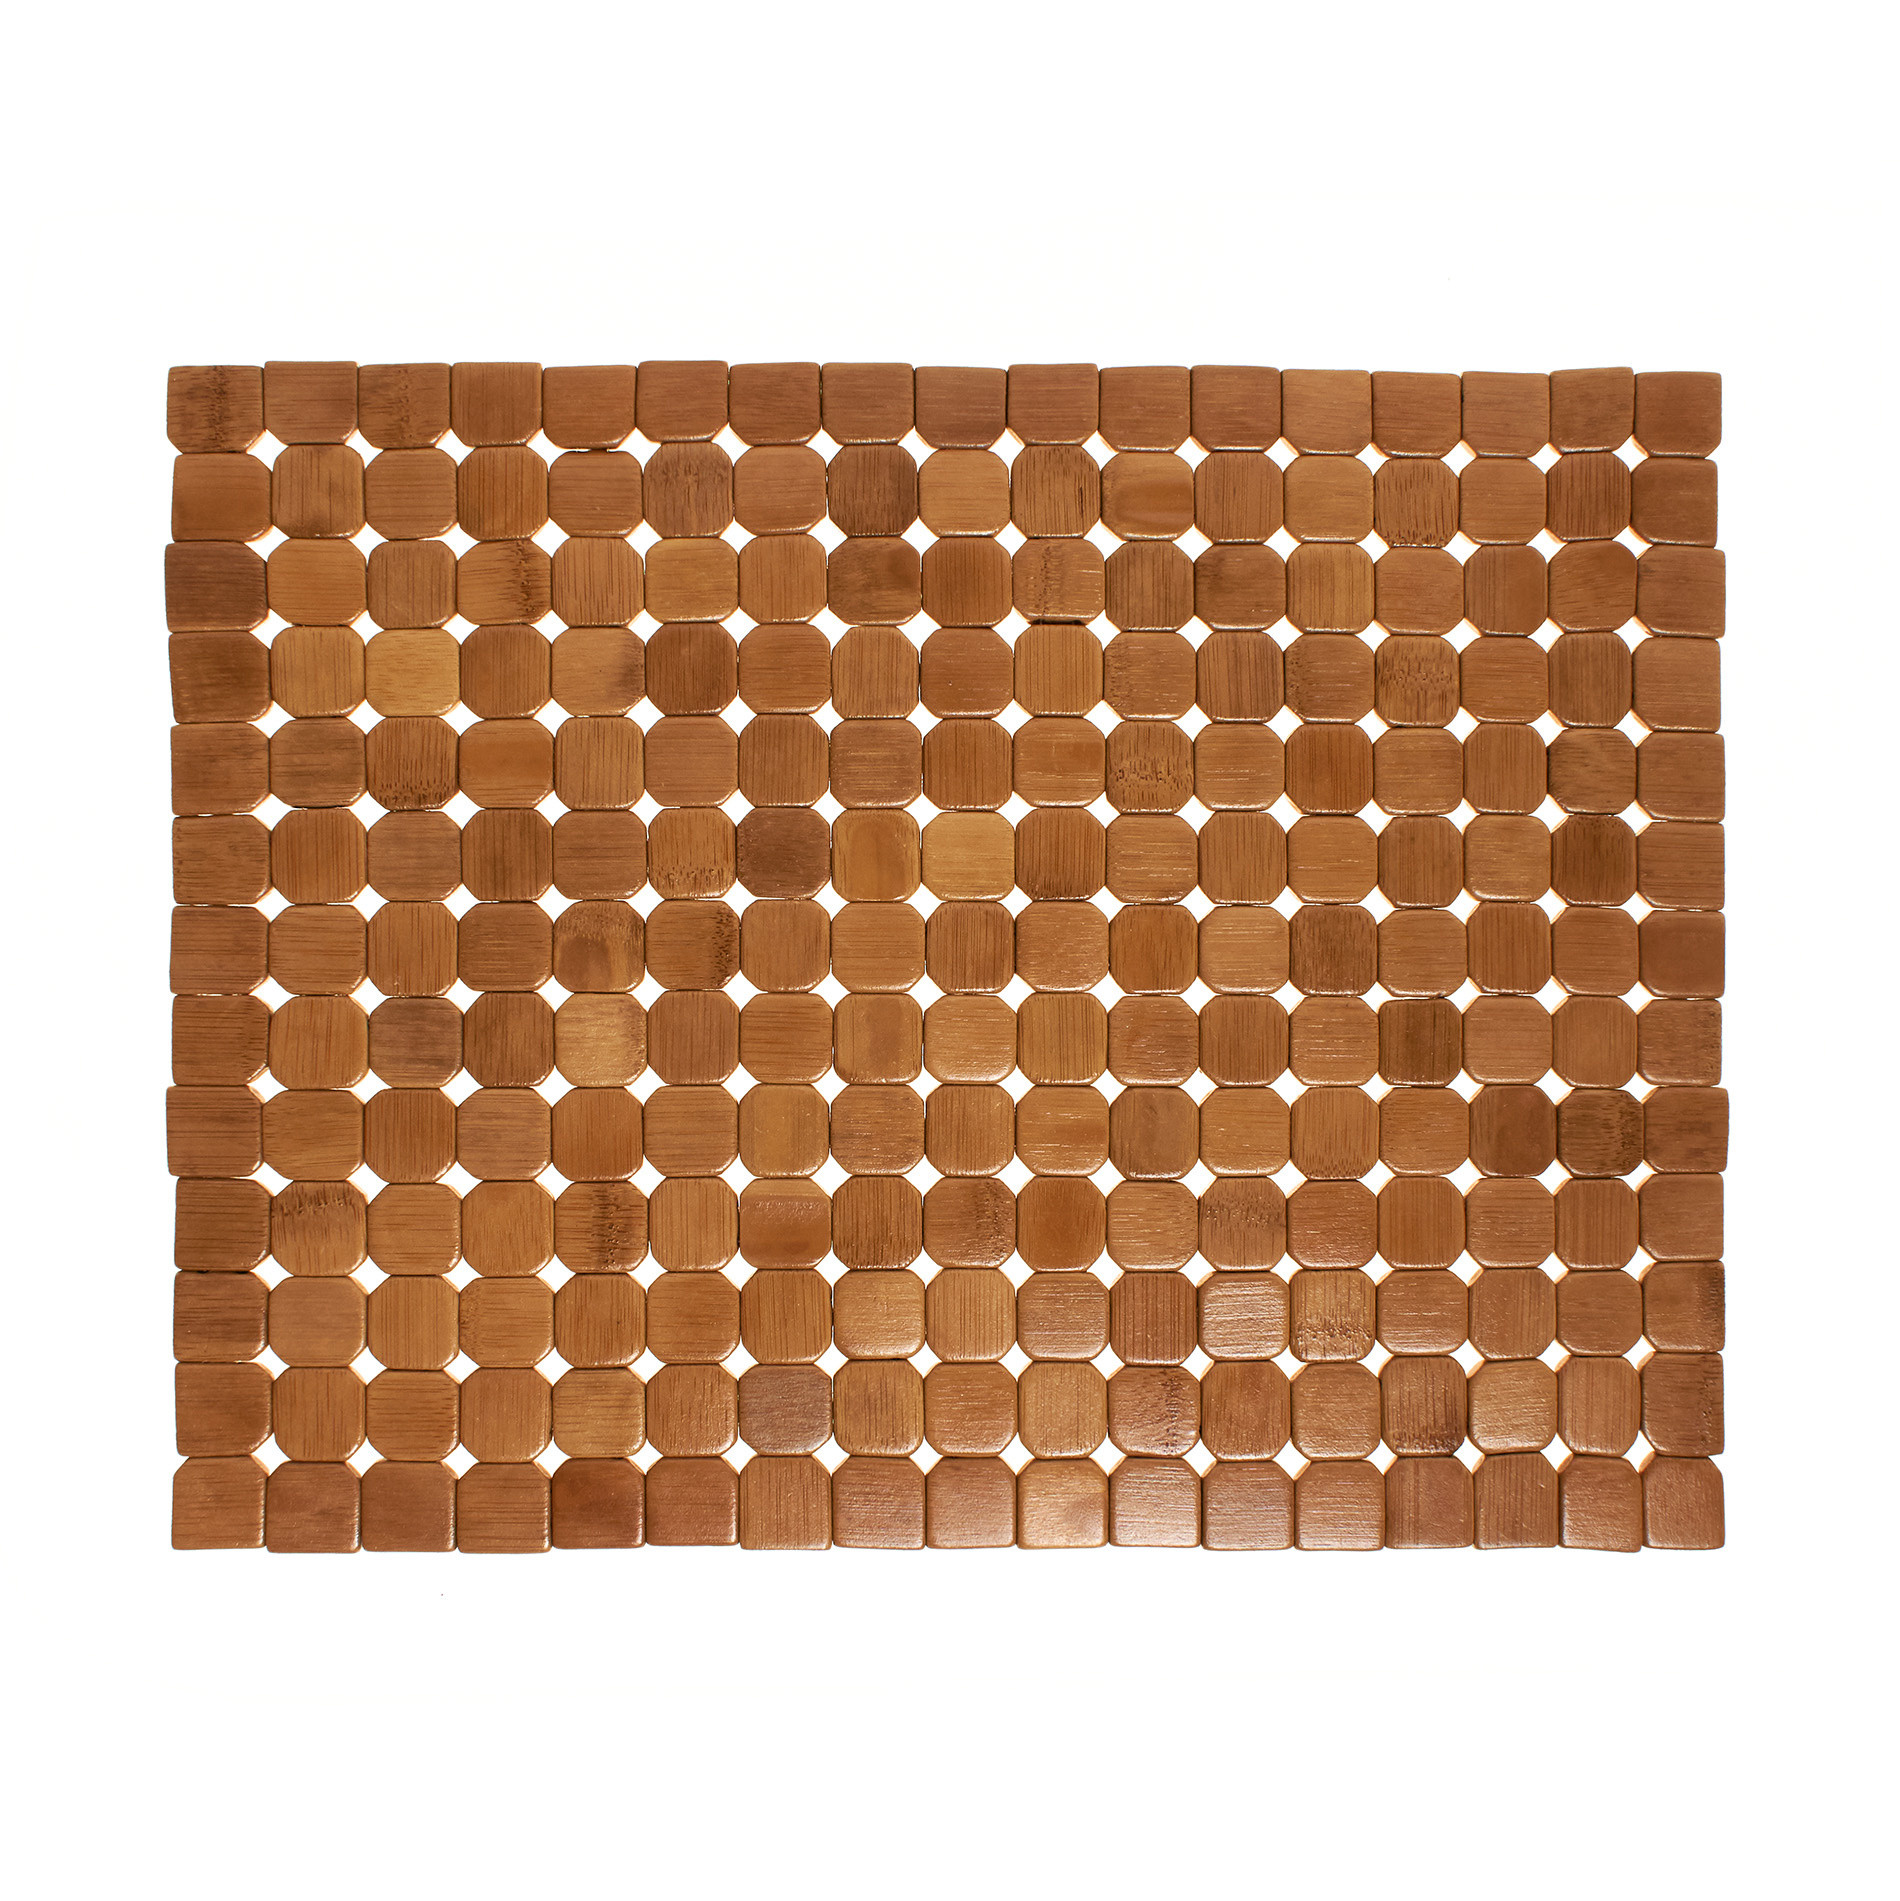 Расписной бамбуковый коврик для столовых приборов Coincasa, светло-коричневый цена и фото